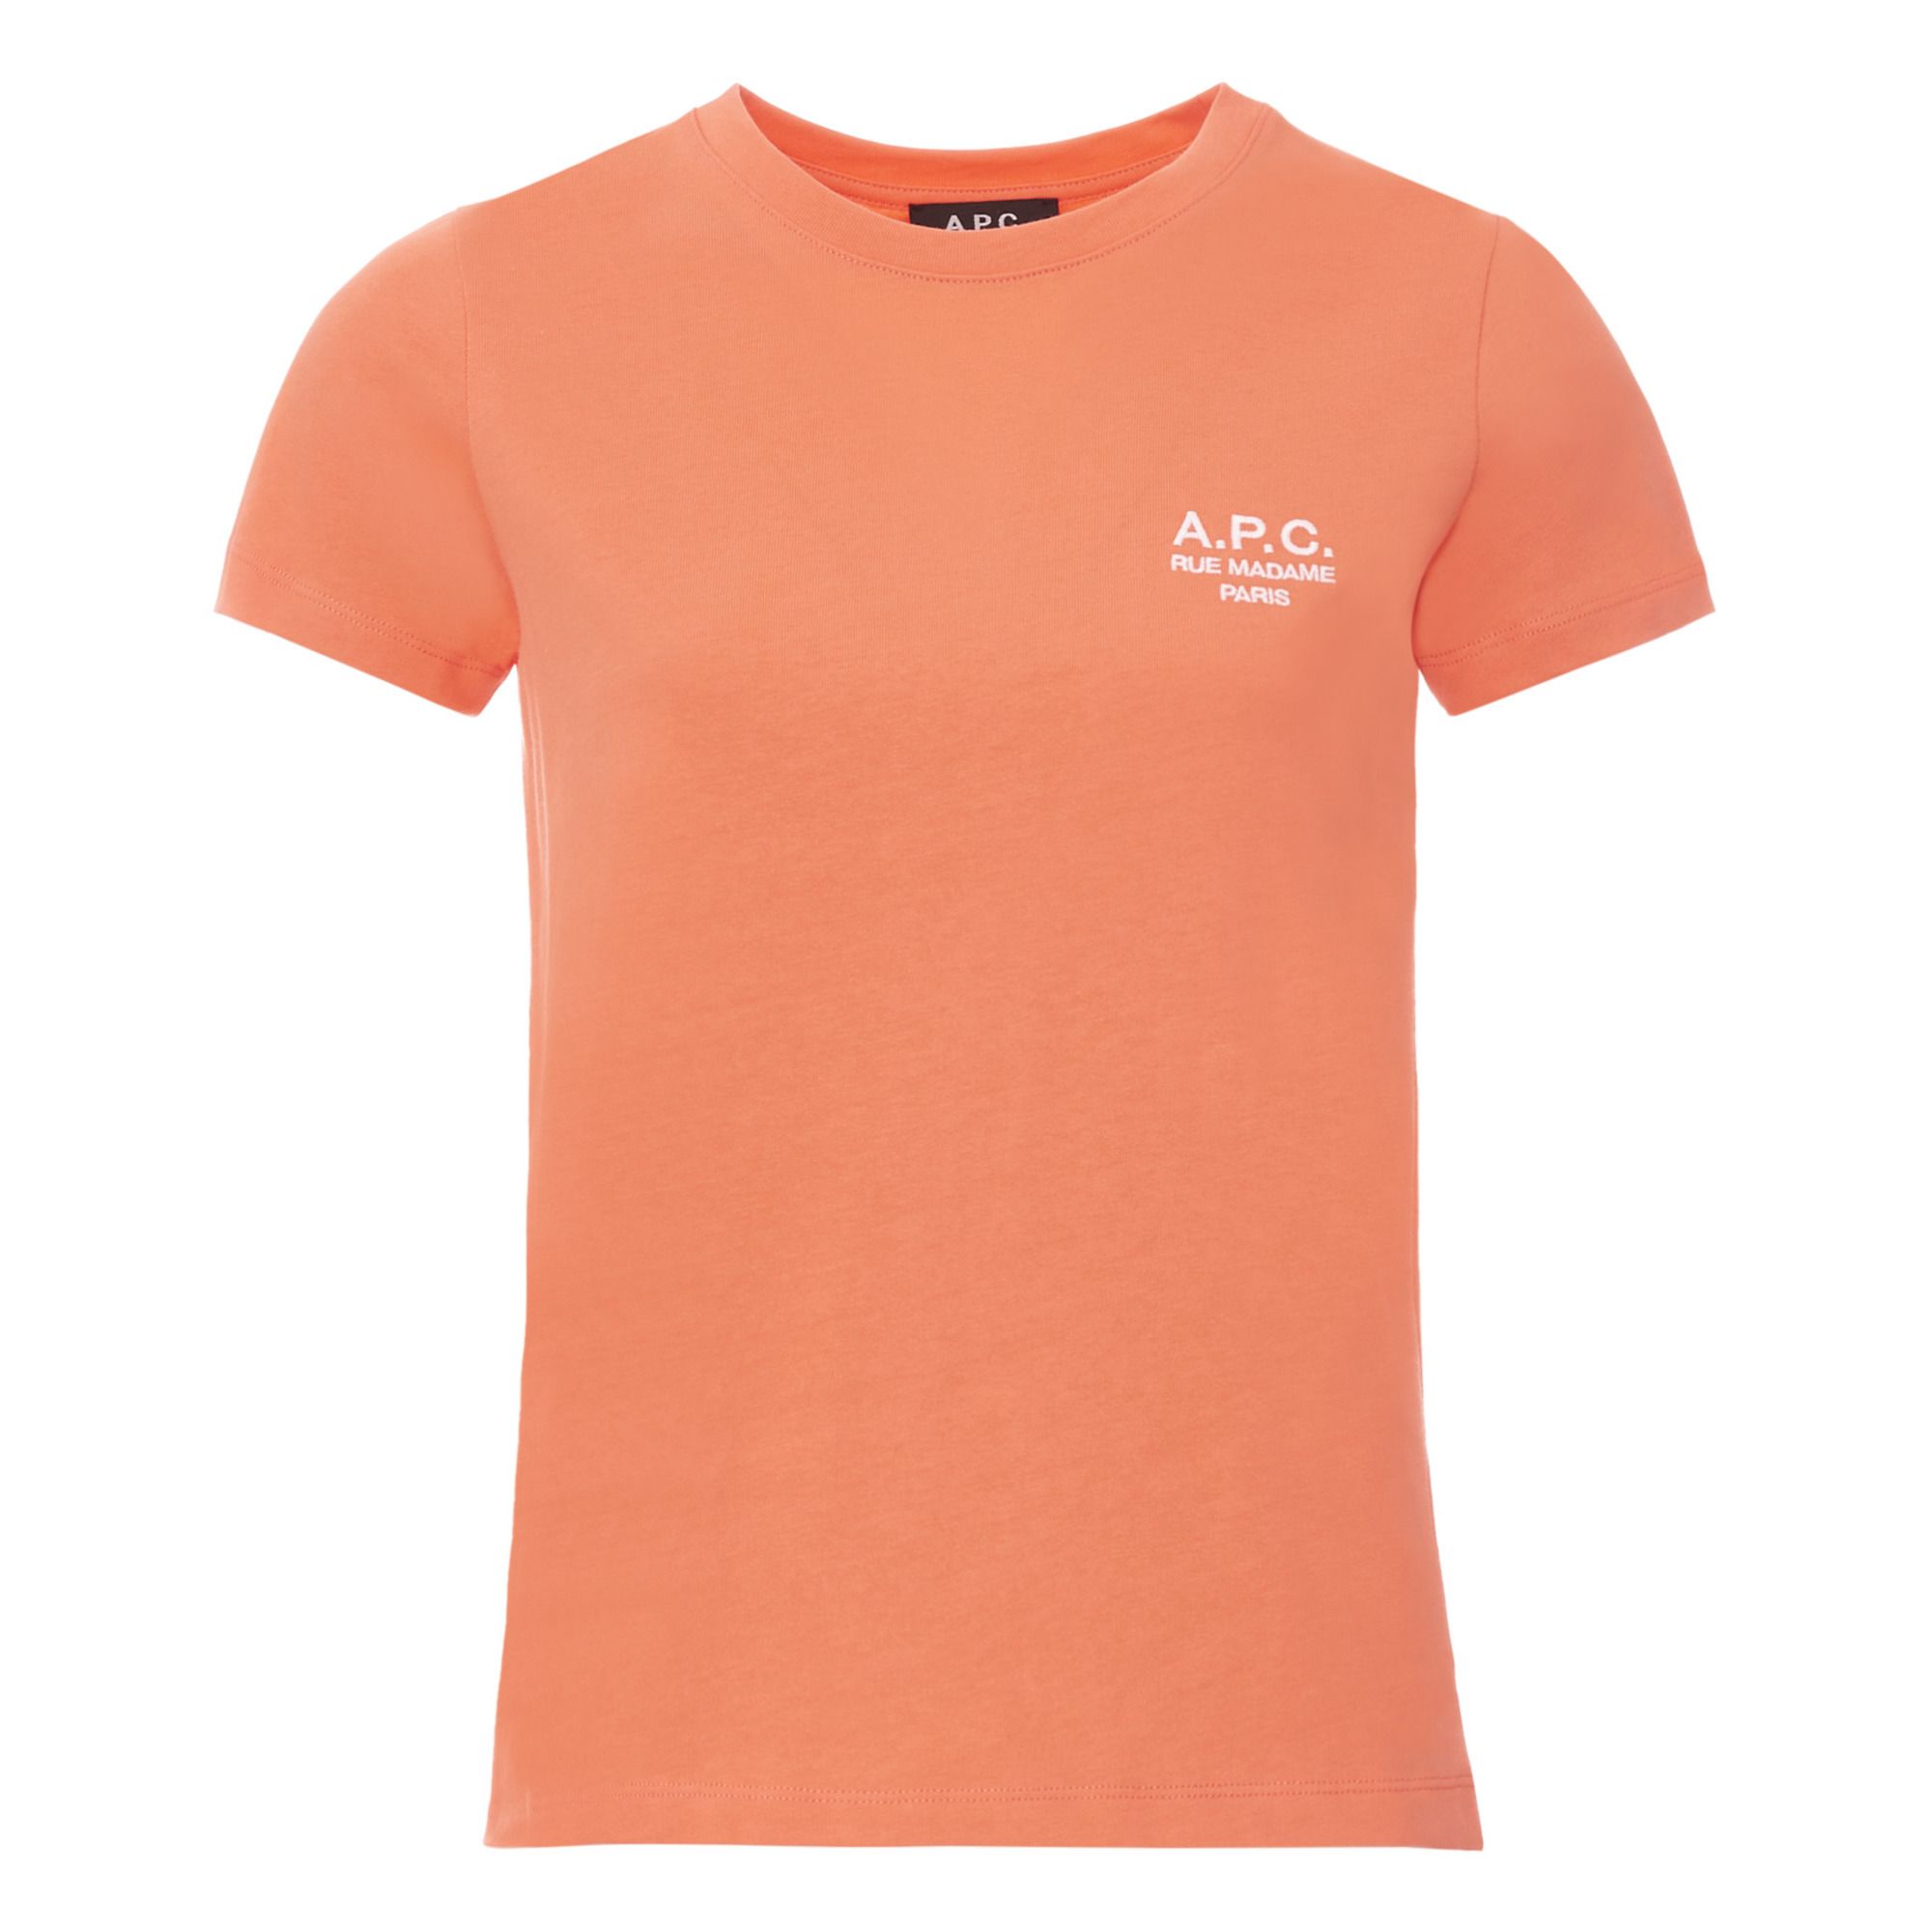 A.P.C. - T-shirt Denise - Femme - Corail